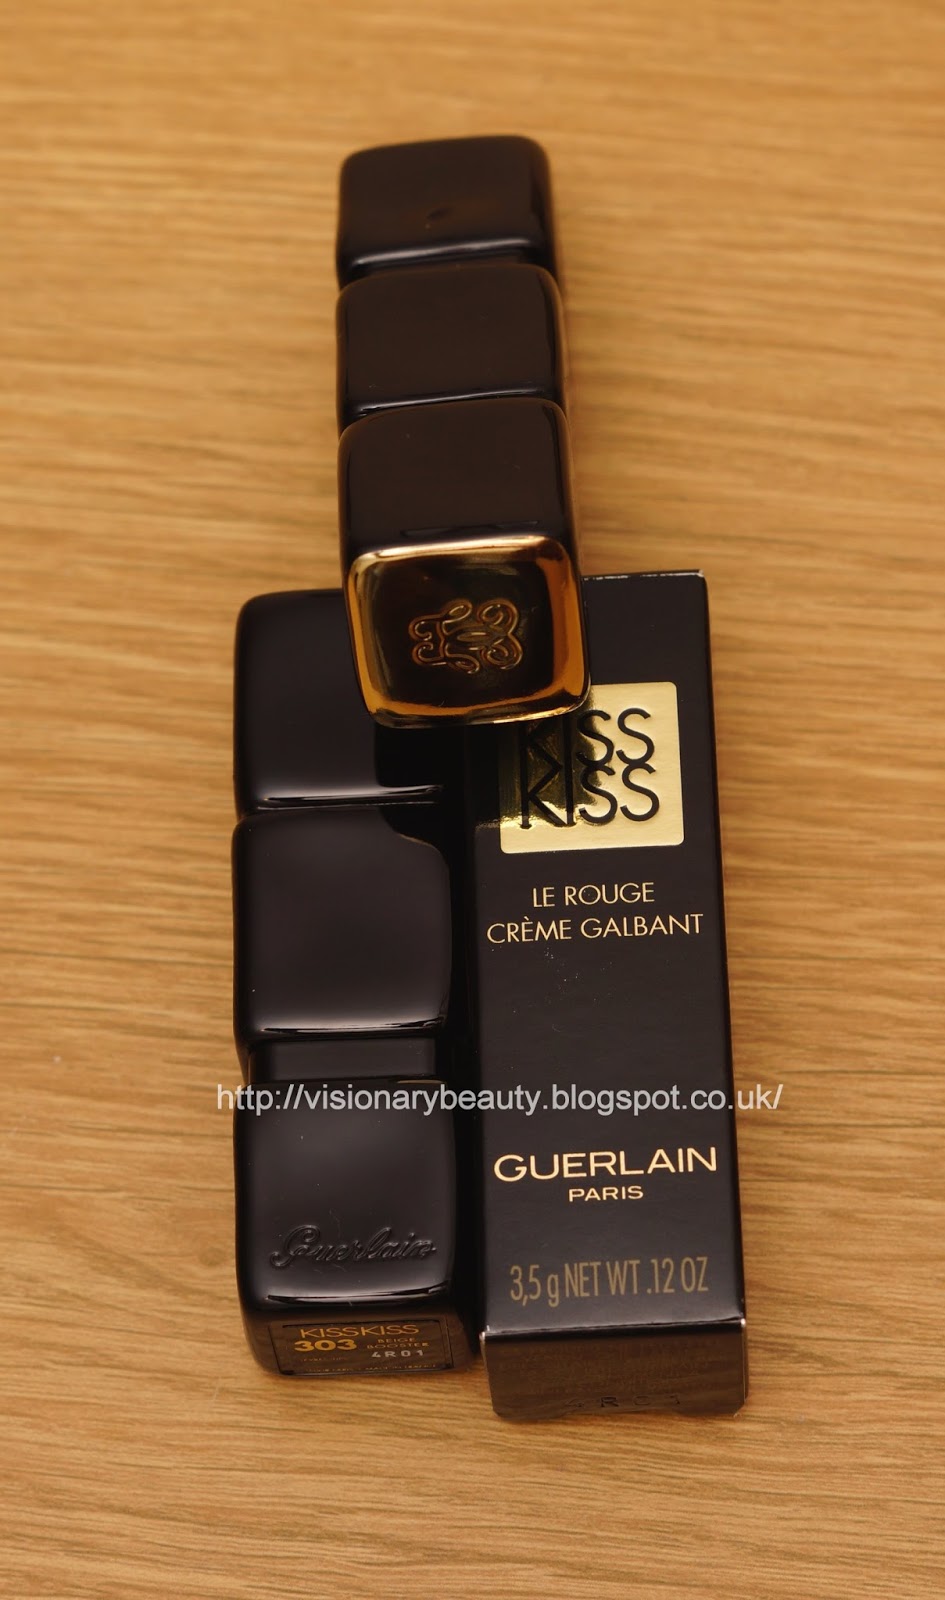 Visionary Beauty: Guerlain new KissKiss lipstick review